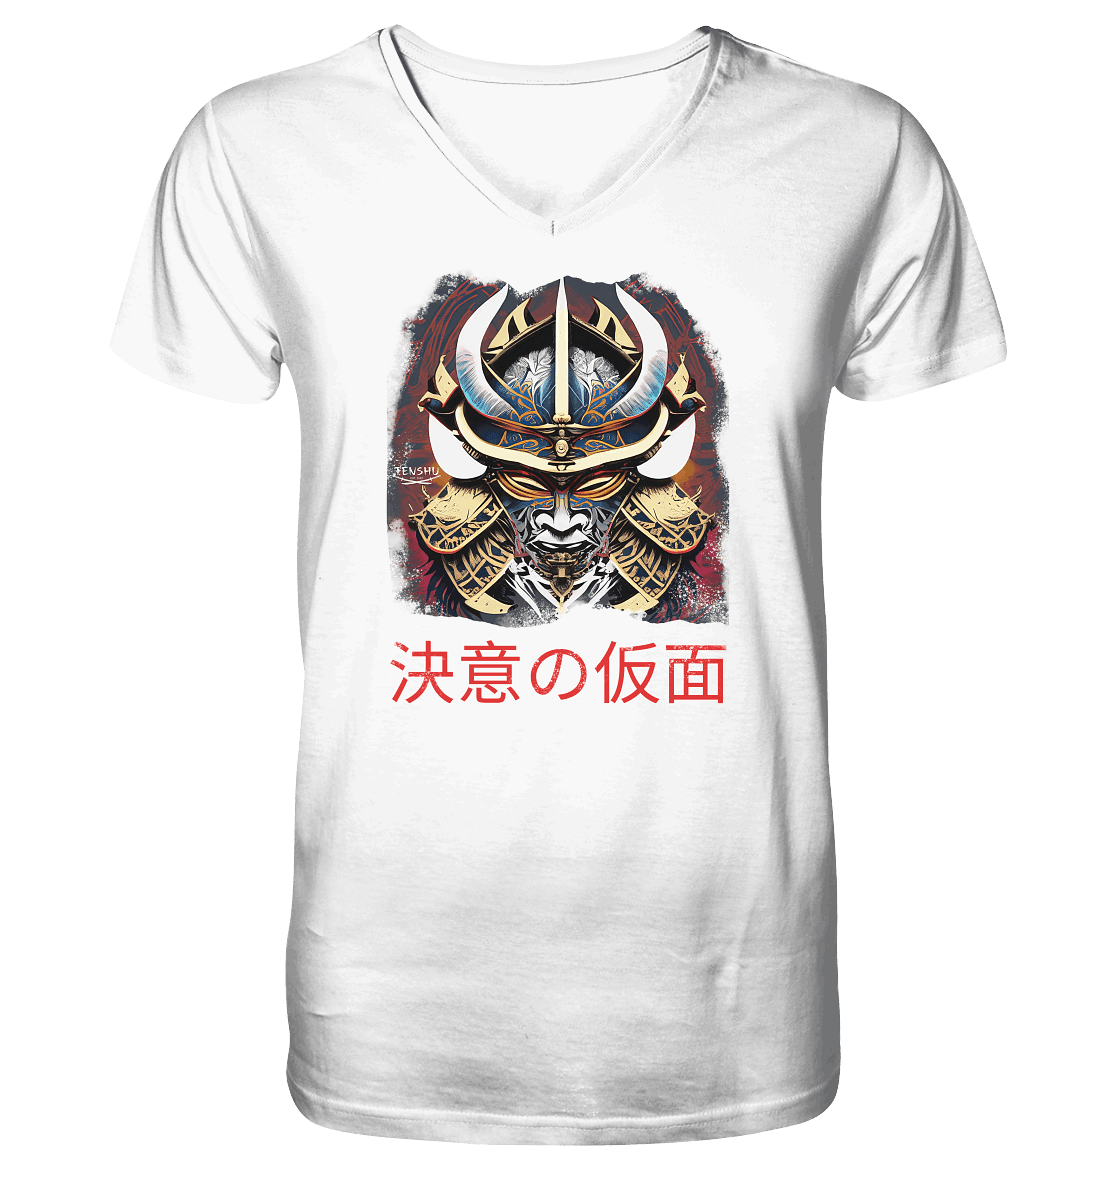 Tenshu / Das Schwert der Vergeltung Kopie - Mens Organic V-Neck Shirt